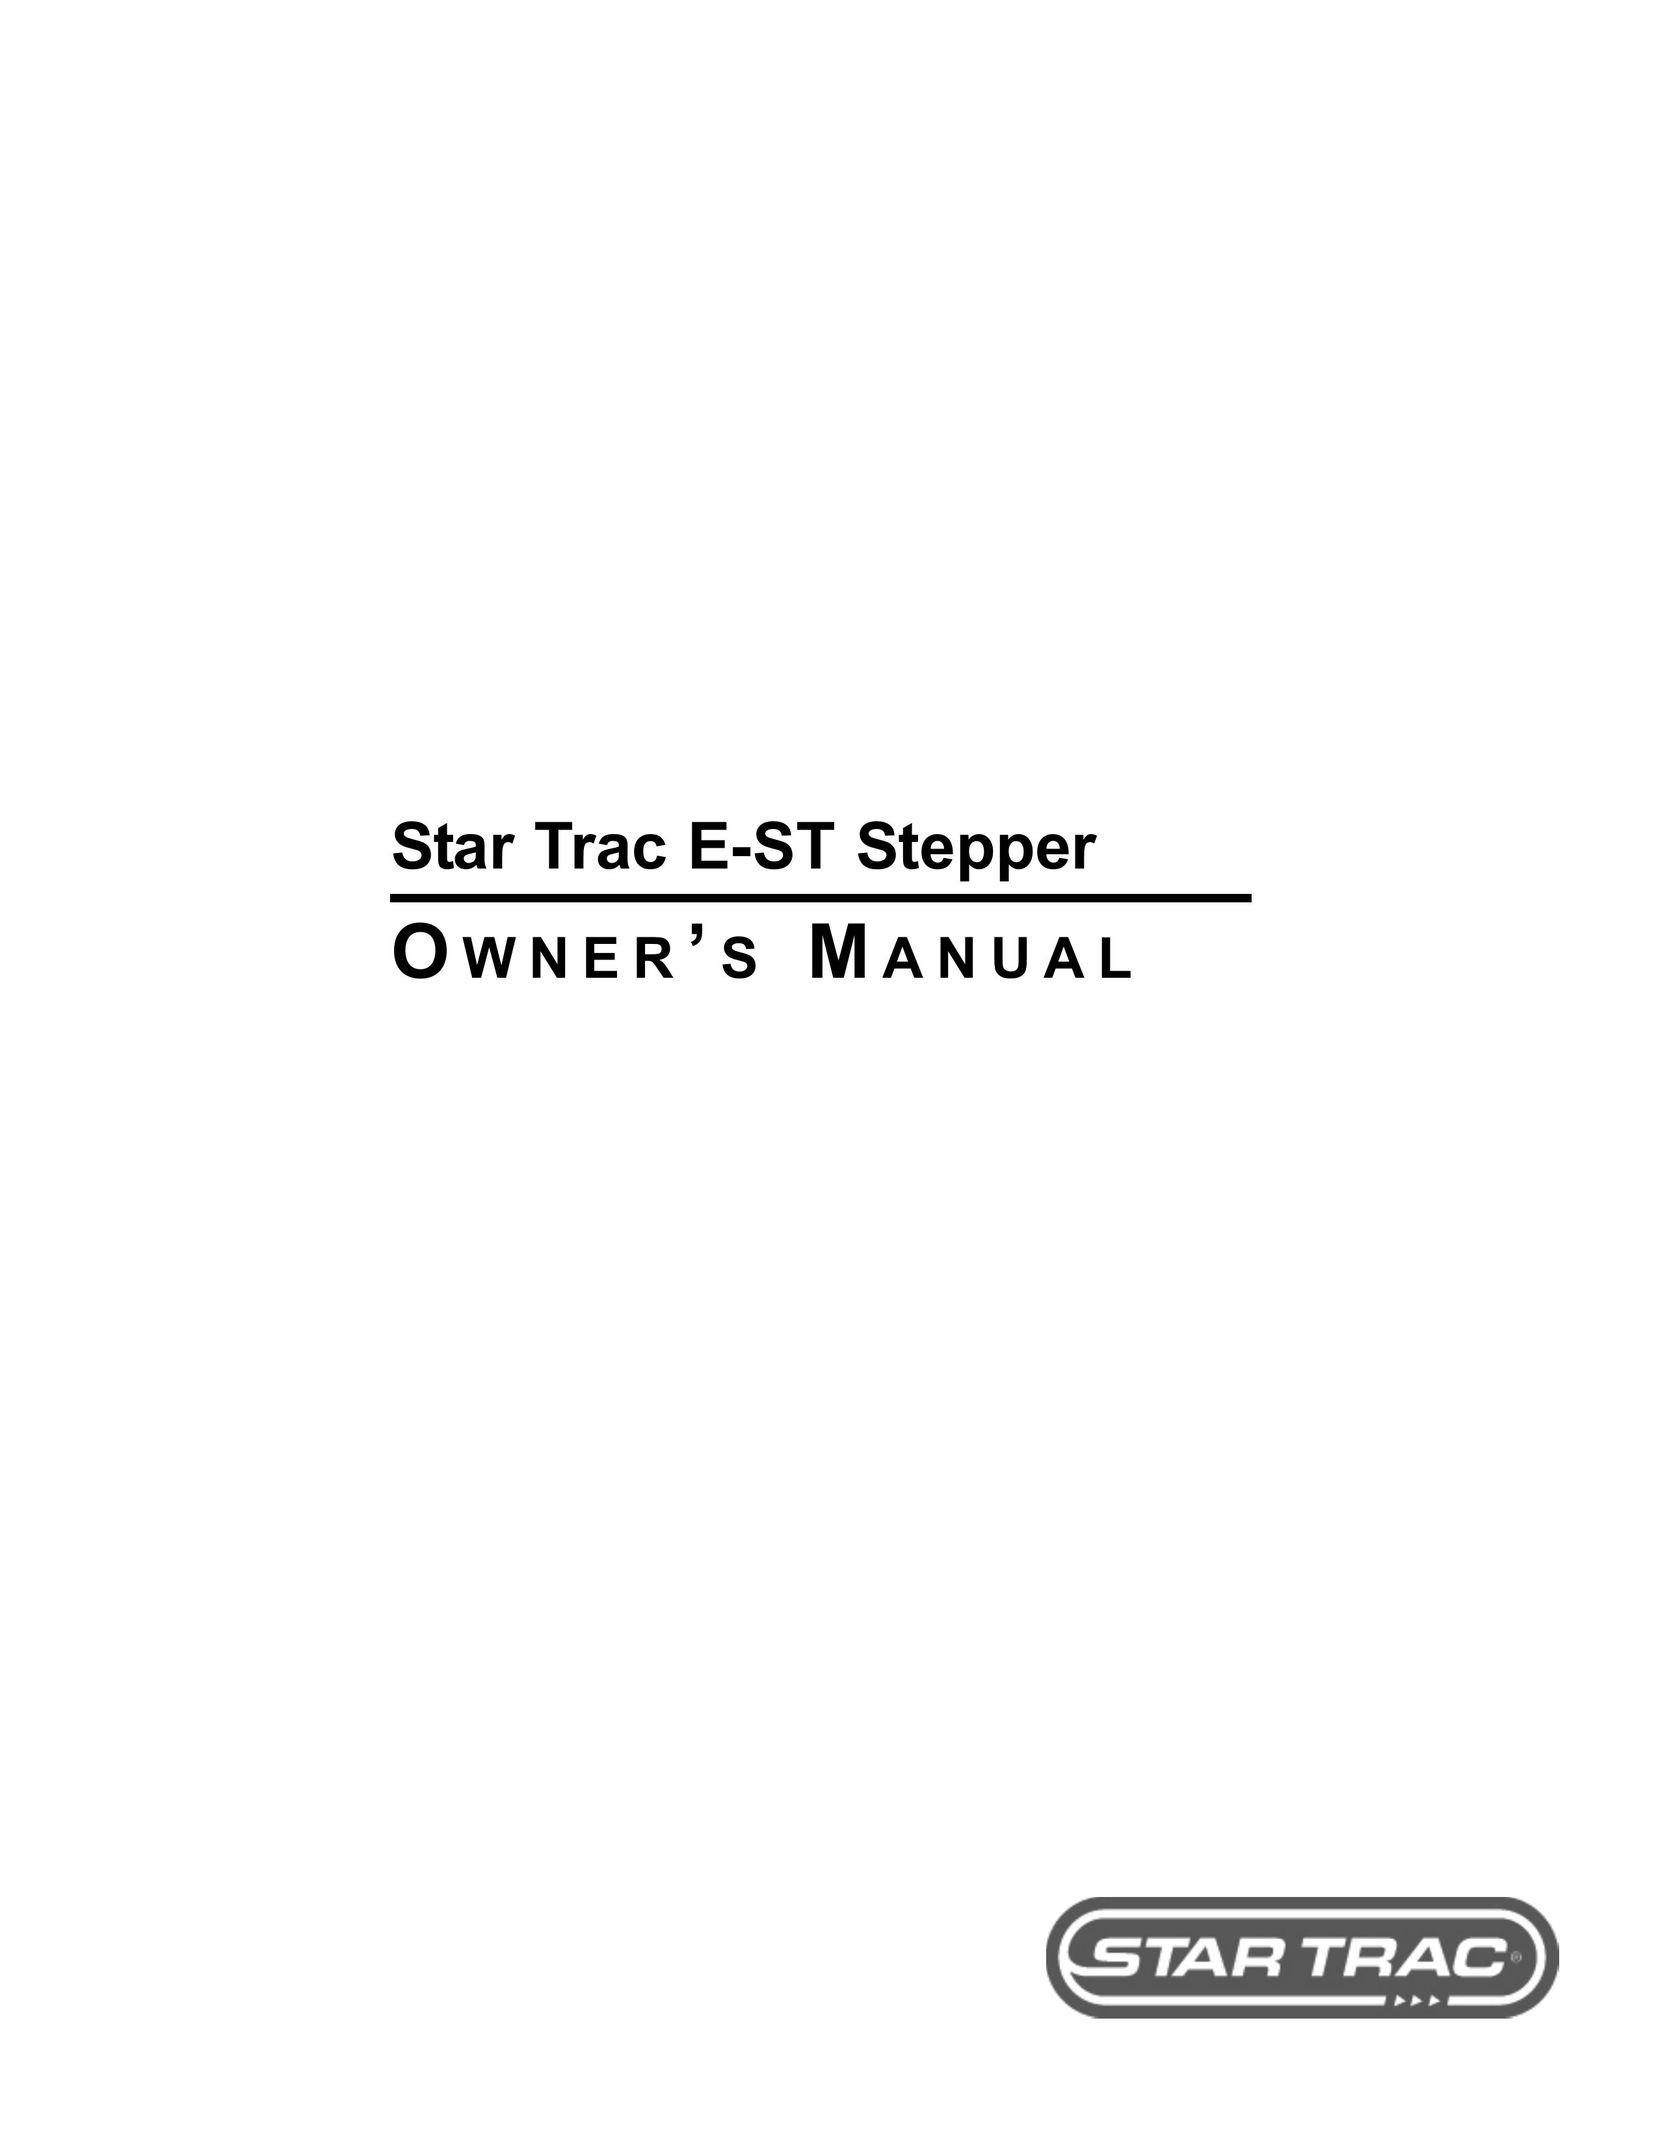 Star Trac E-ST Stepper Machine User Manual